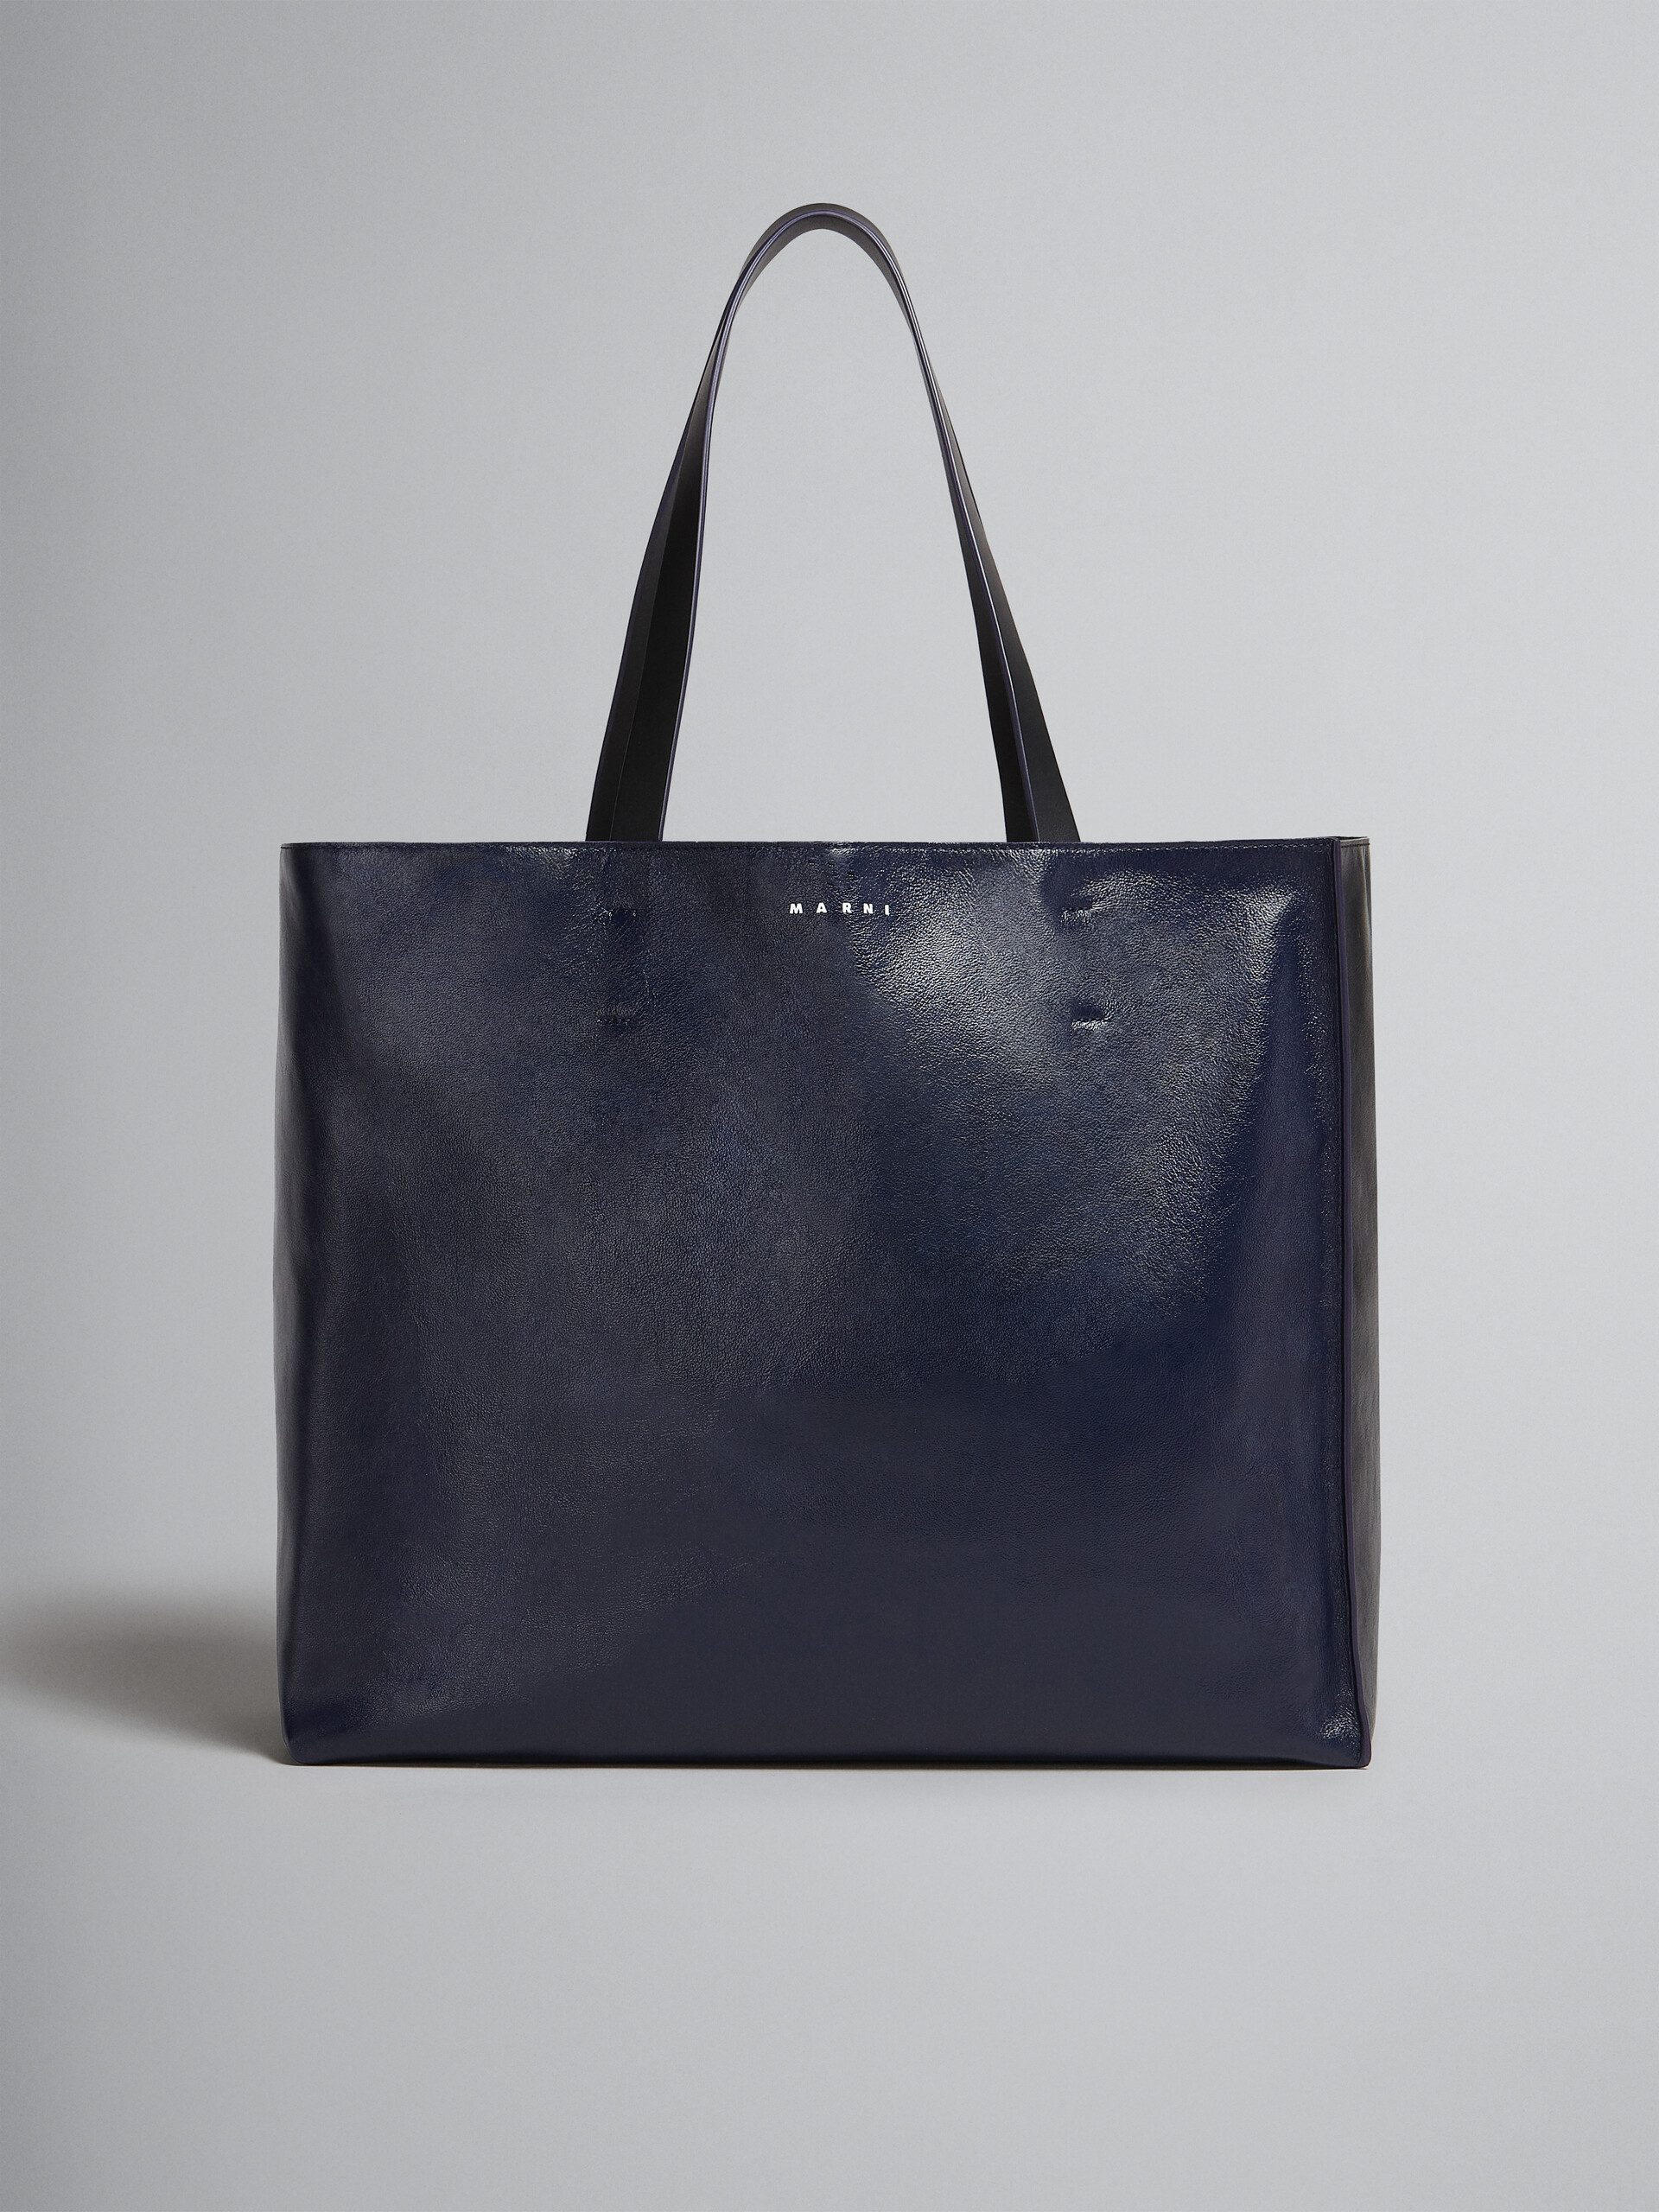 Tasche Museo Soft aus Leder in Blau und Schwarz - Shopper - Image 1